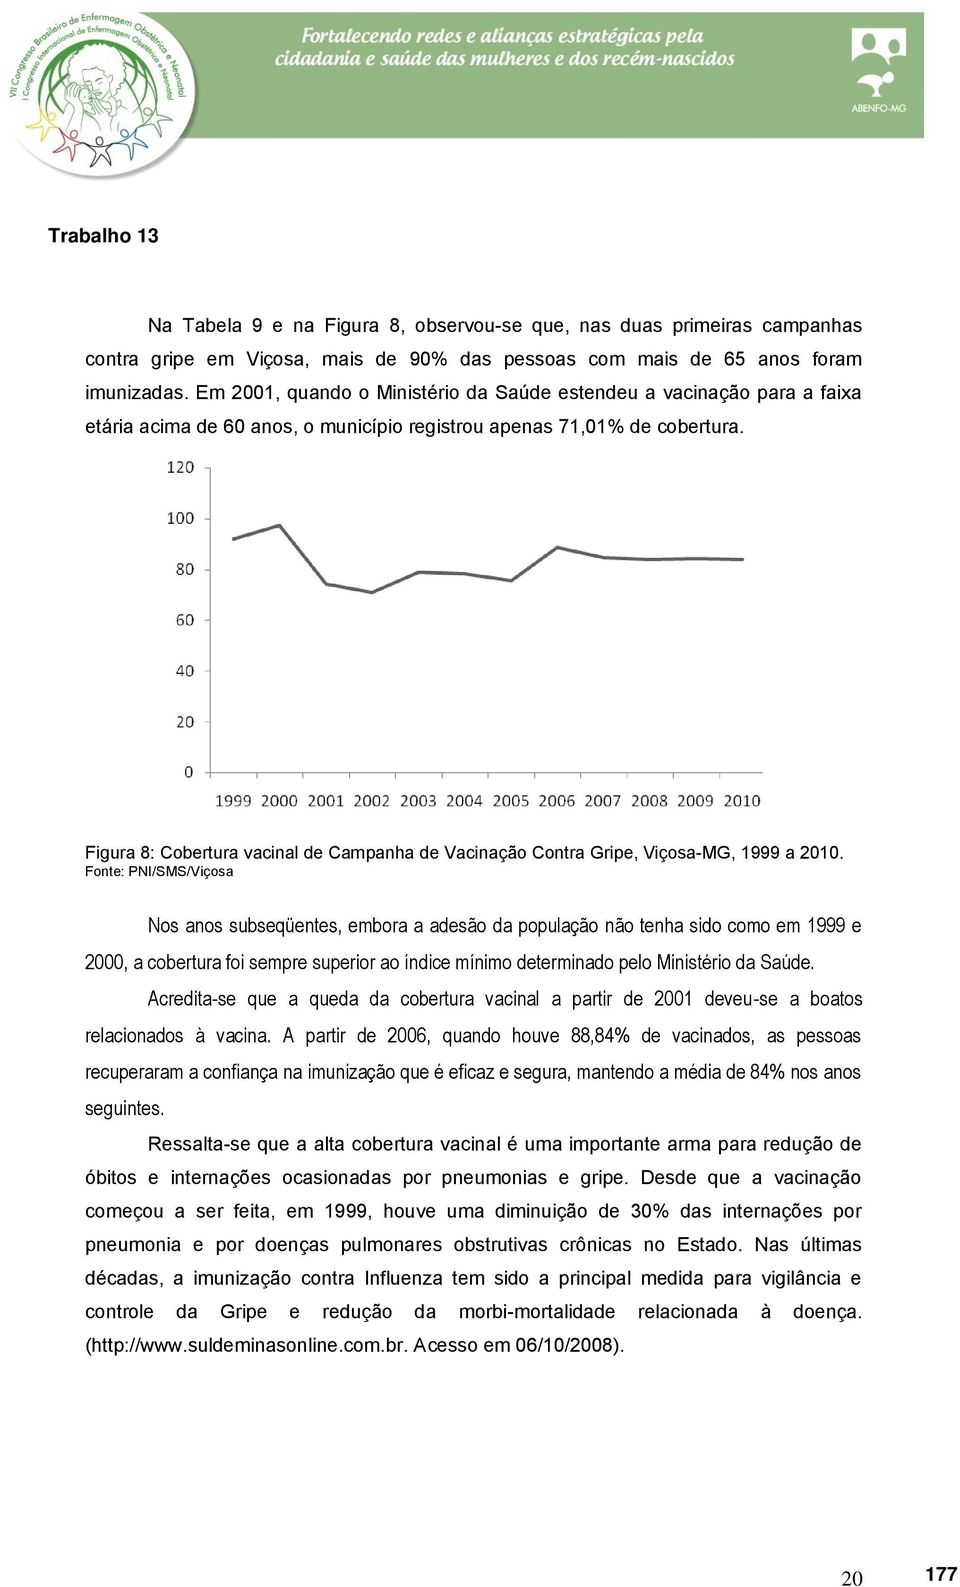 Figura 8: Cobertura vacinal de Campanha de Vacinação Contra Gripe, Viçosa-MG, 1999 a 2010.